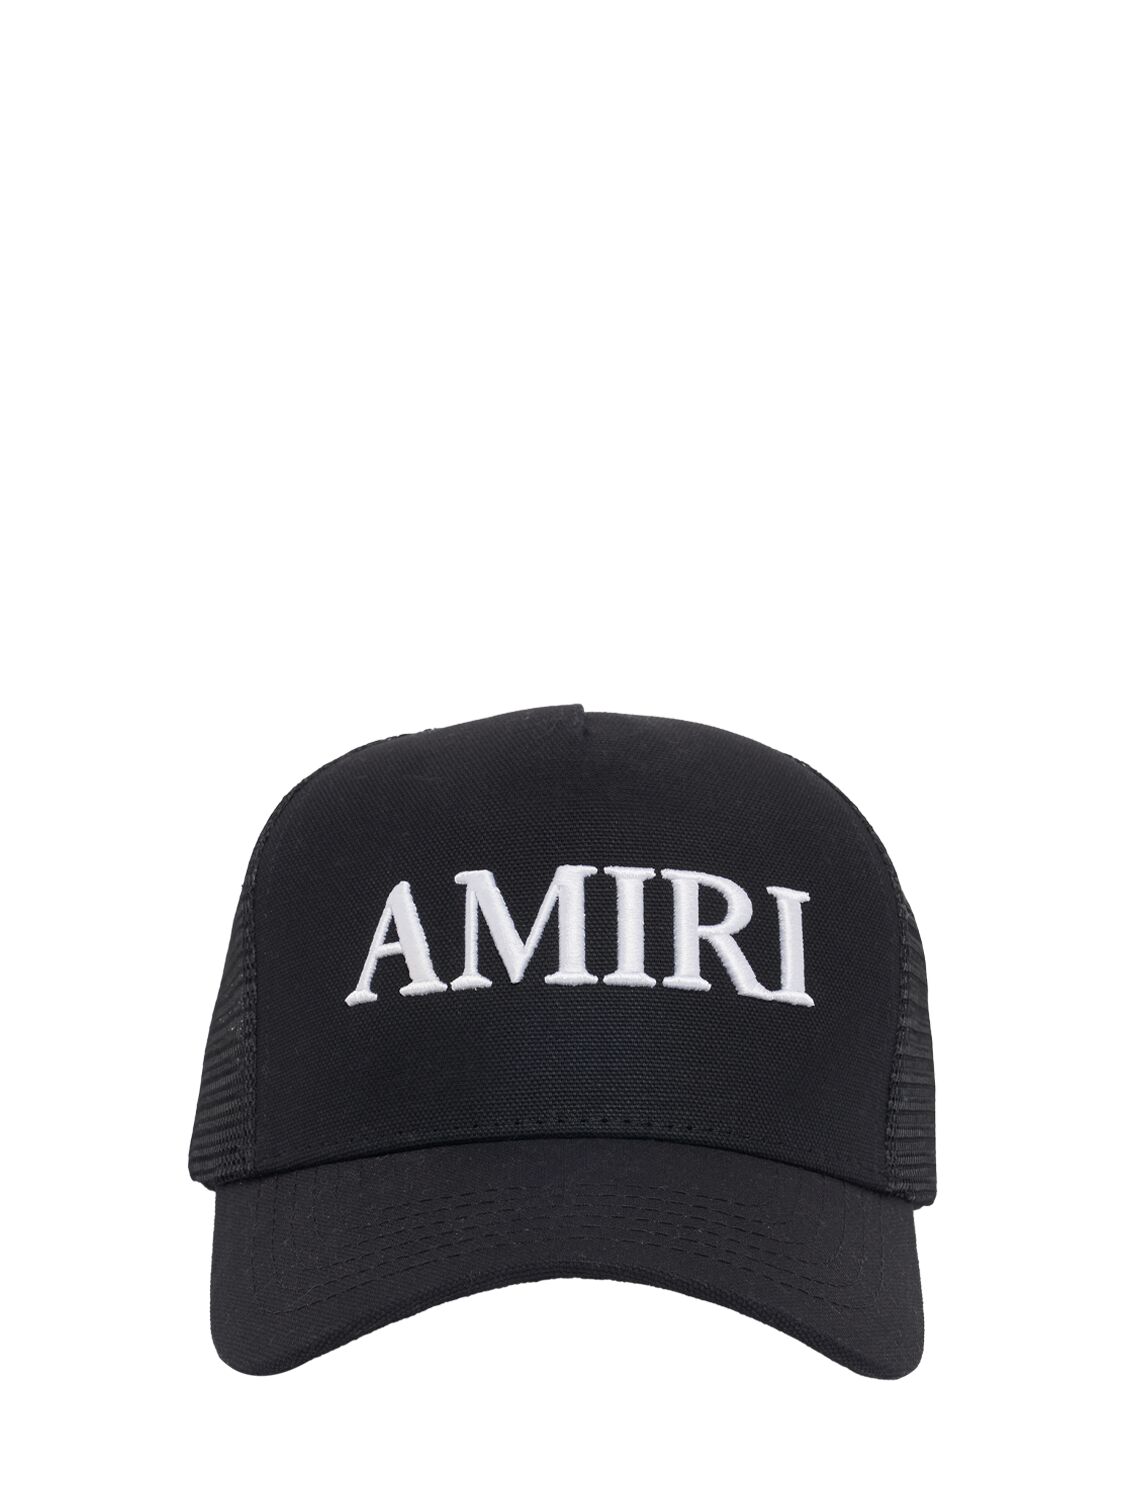 Amiri Logo Cotton Canvas Trucker Hat In Black/white